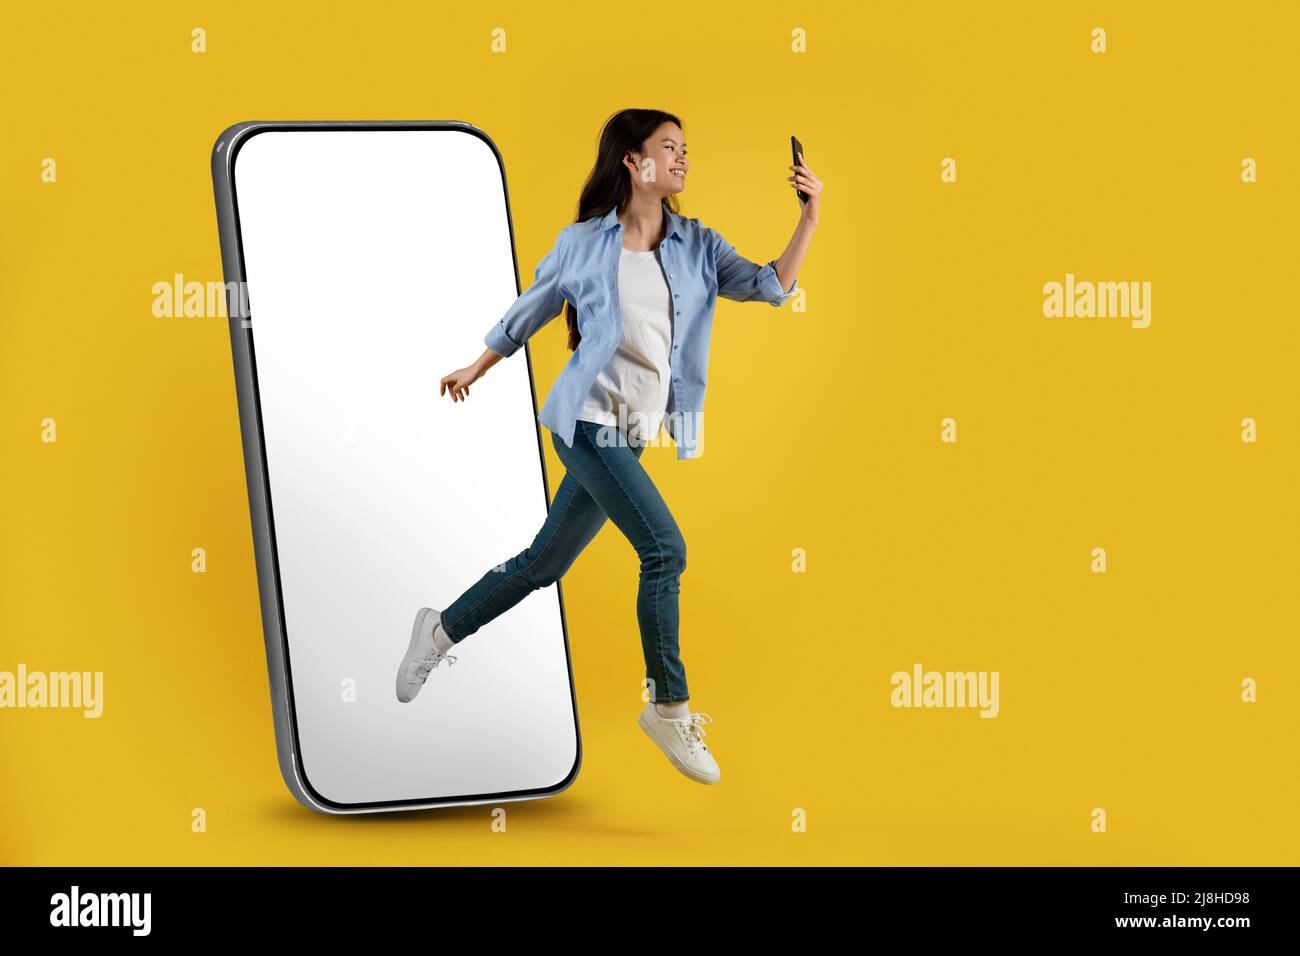 Zufriedene junge asiatische Dame springen aus riesigen Telefon mit leerem Bildschirm fror in der Luft und Blick auf Smartphone Stockfoto